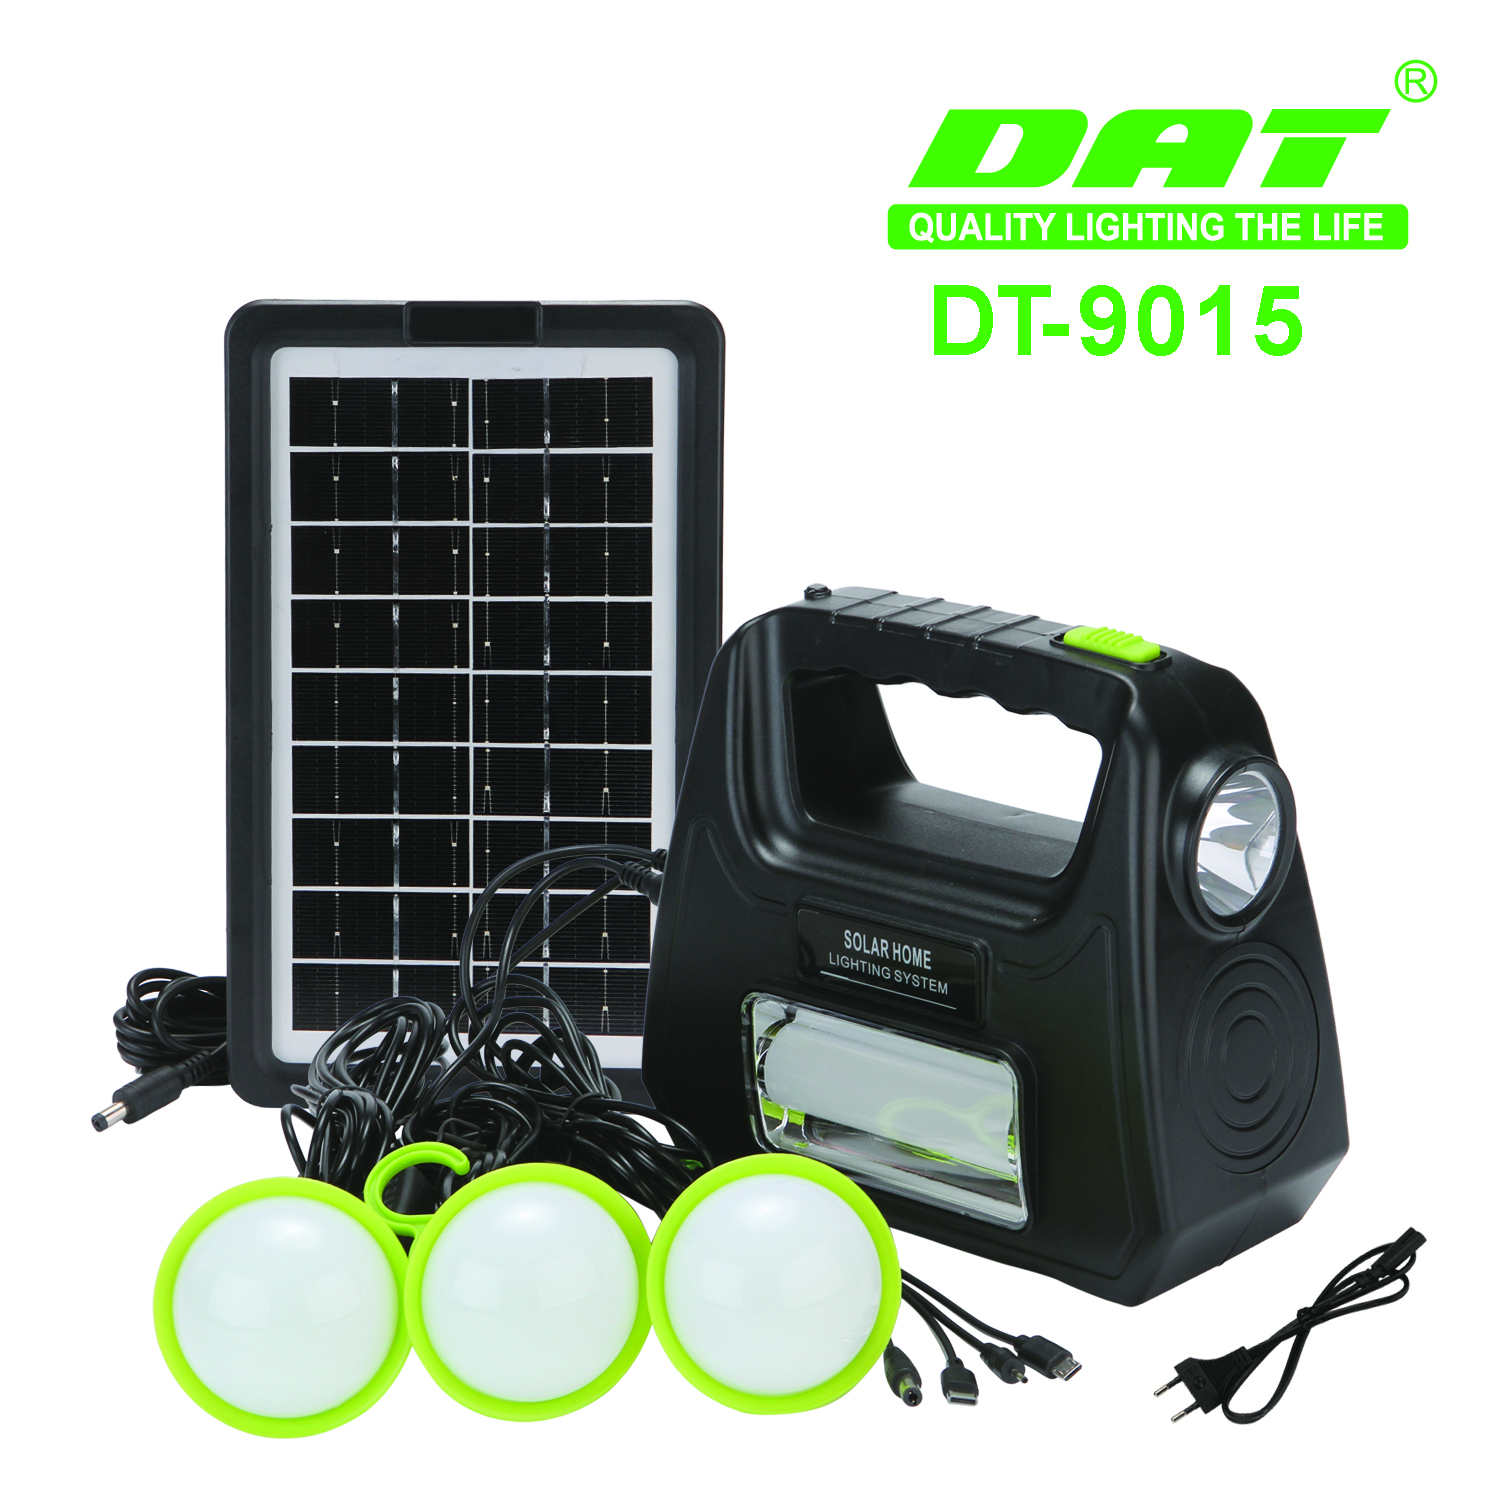 DT-9015太阳能照明小系统可充电野营灯带usb线便携式户外照明LED灯详情图1